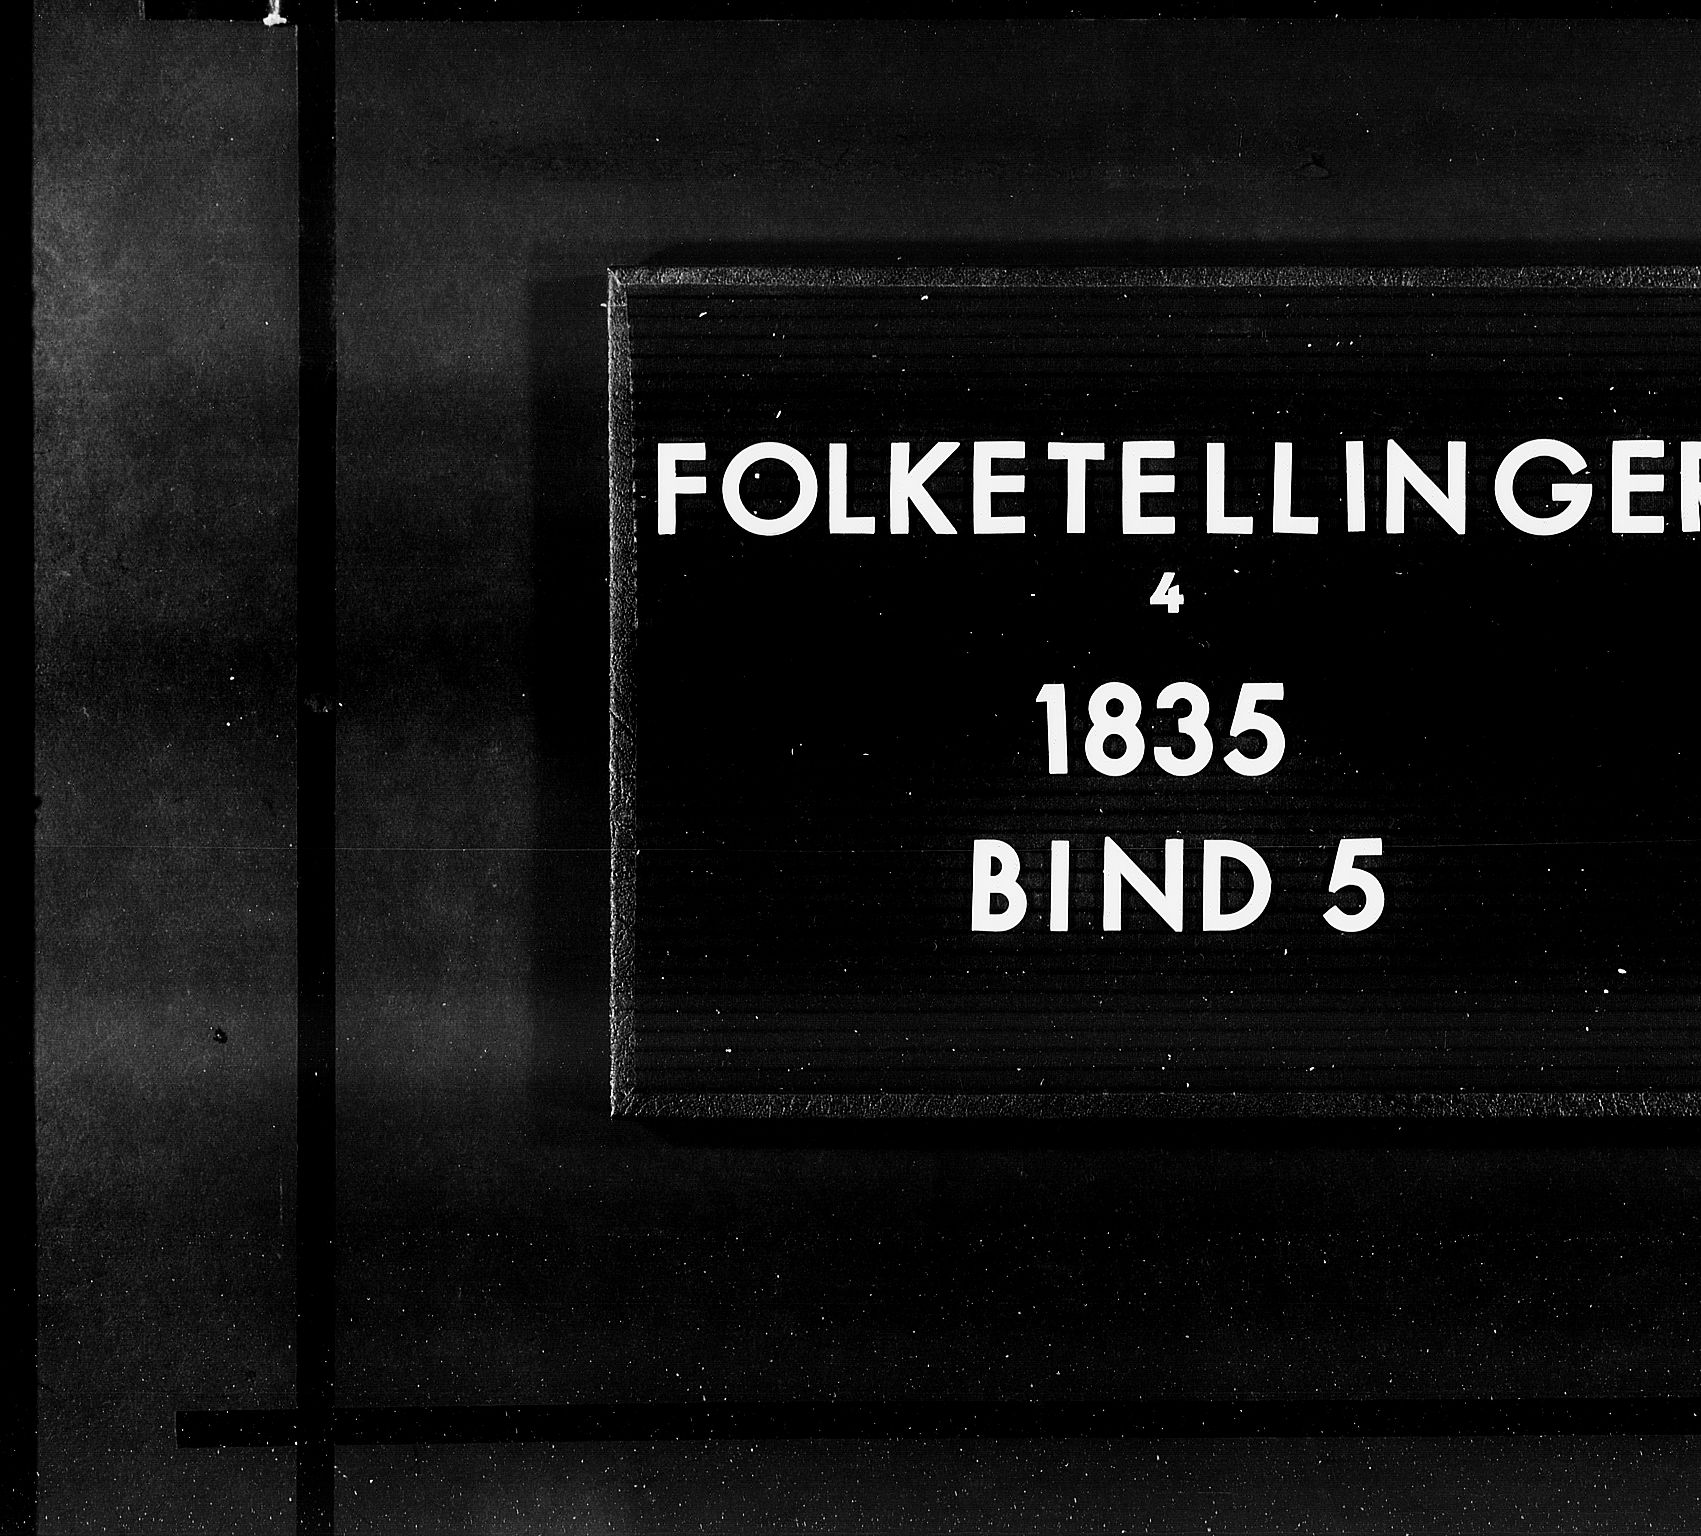 RA, Folketellingen 1835, bind 5: Bratsberg amt og Nedenes og Råbyggelaget amt, 1835